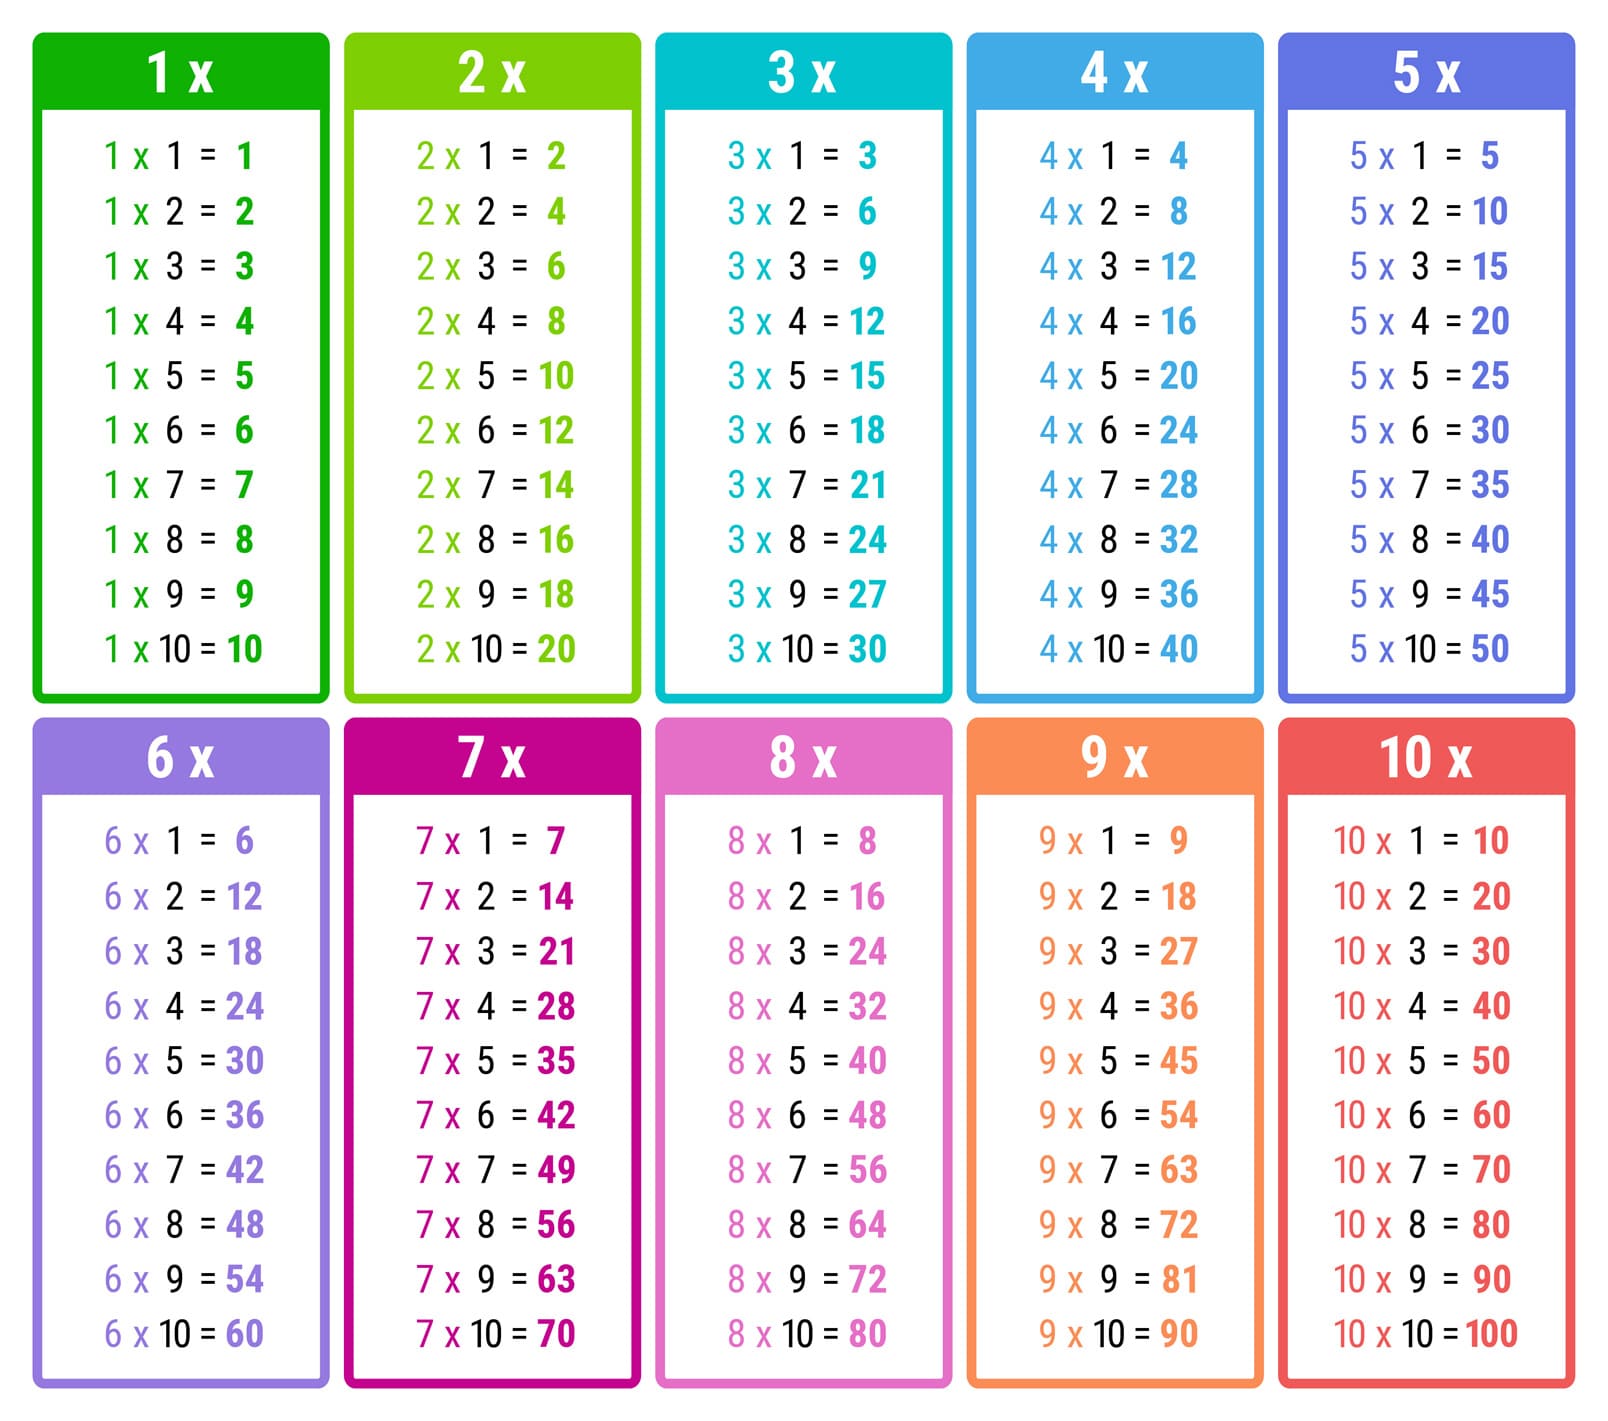 Les tables de multiplication sur